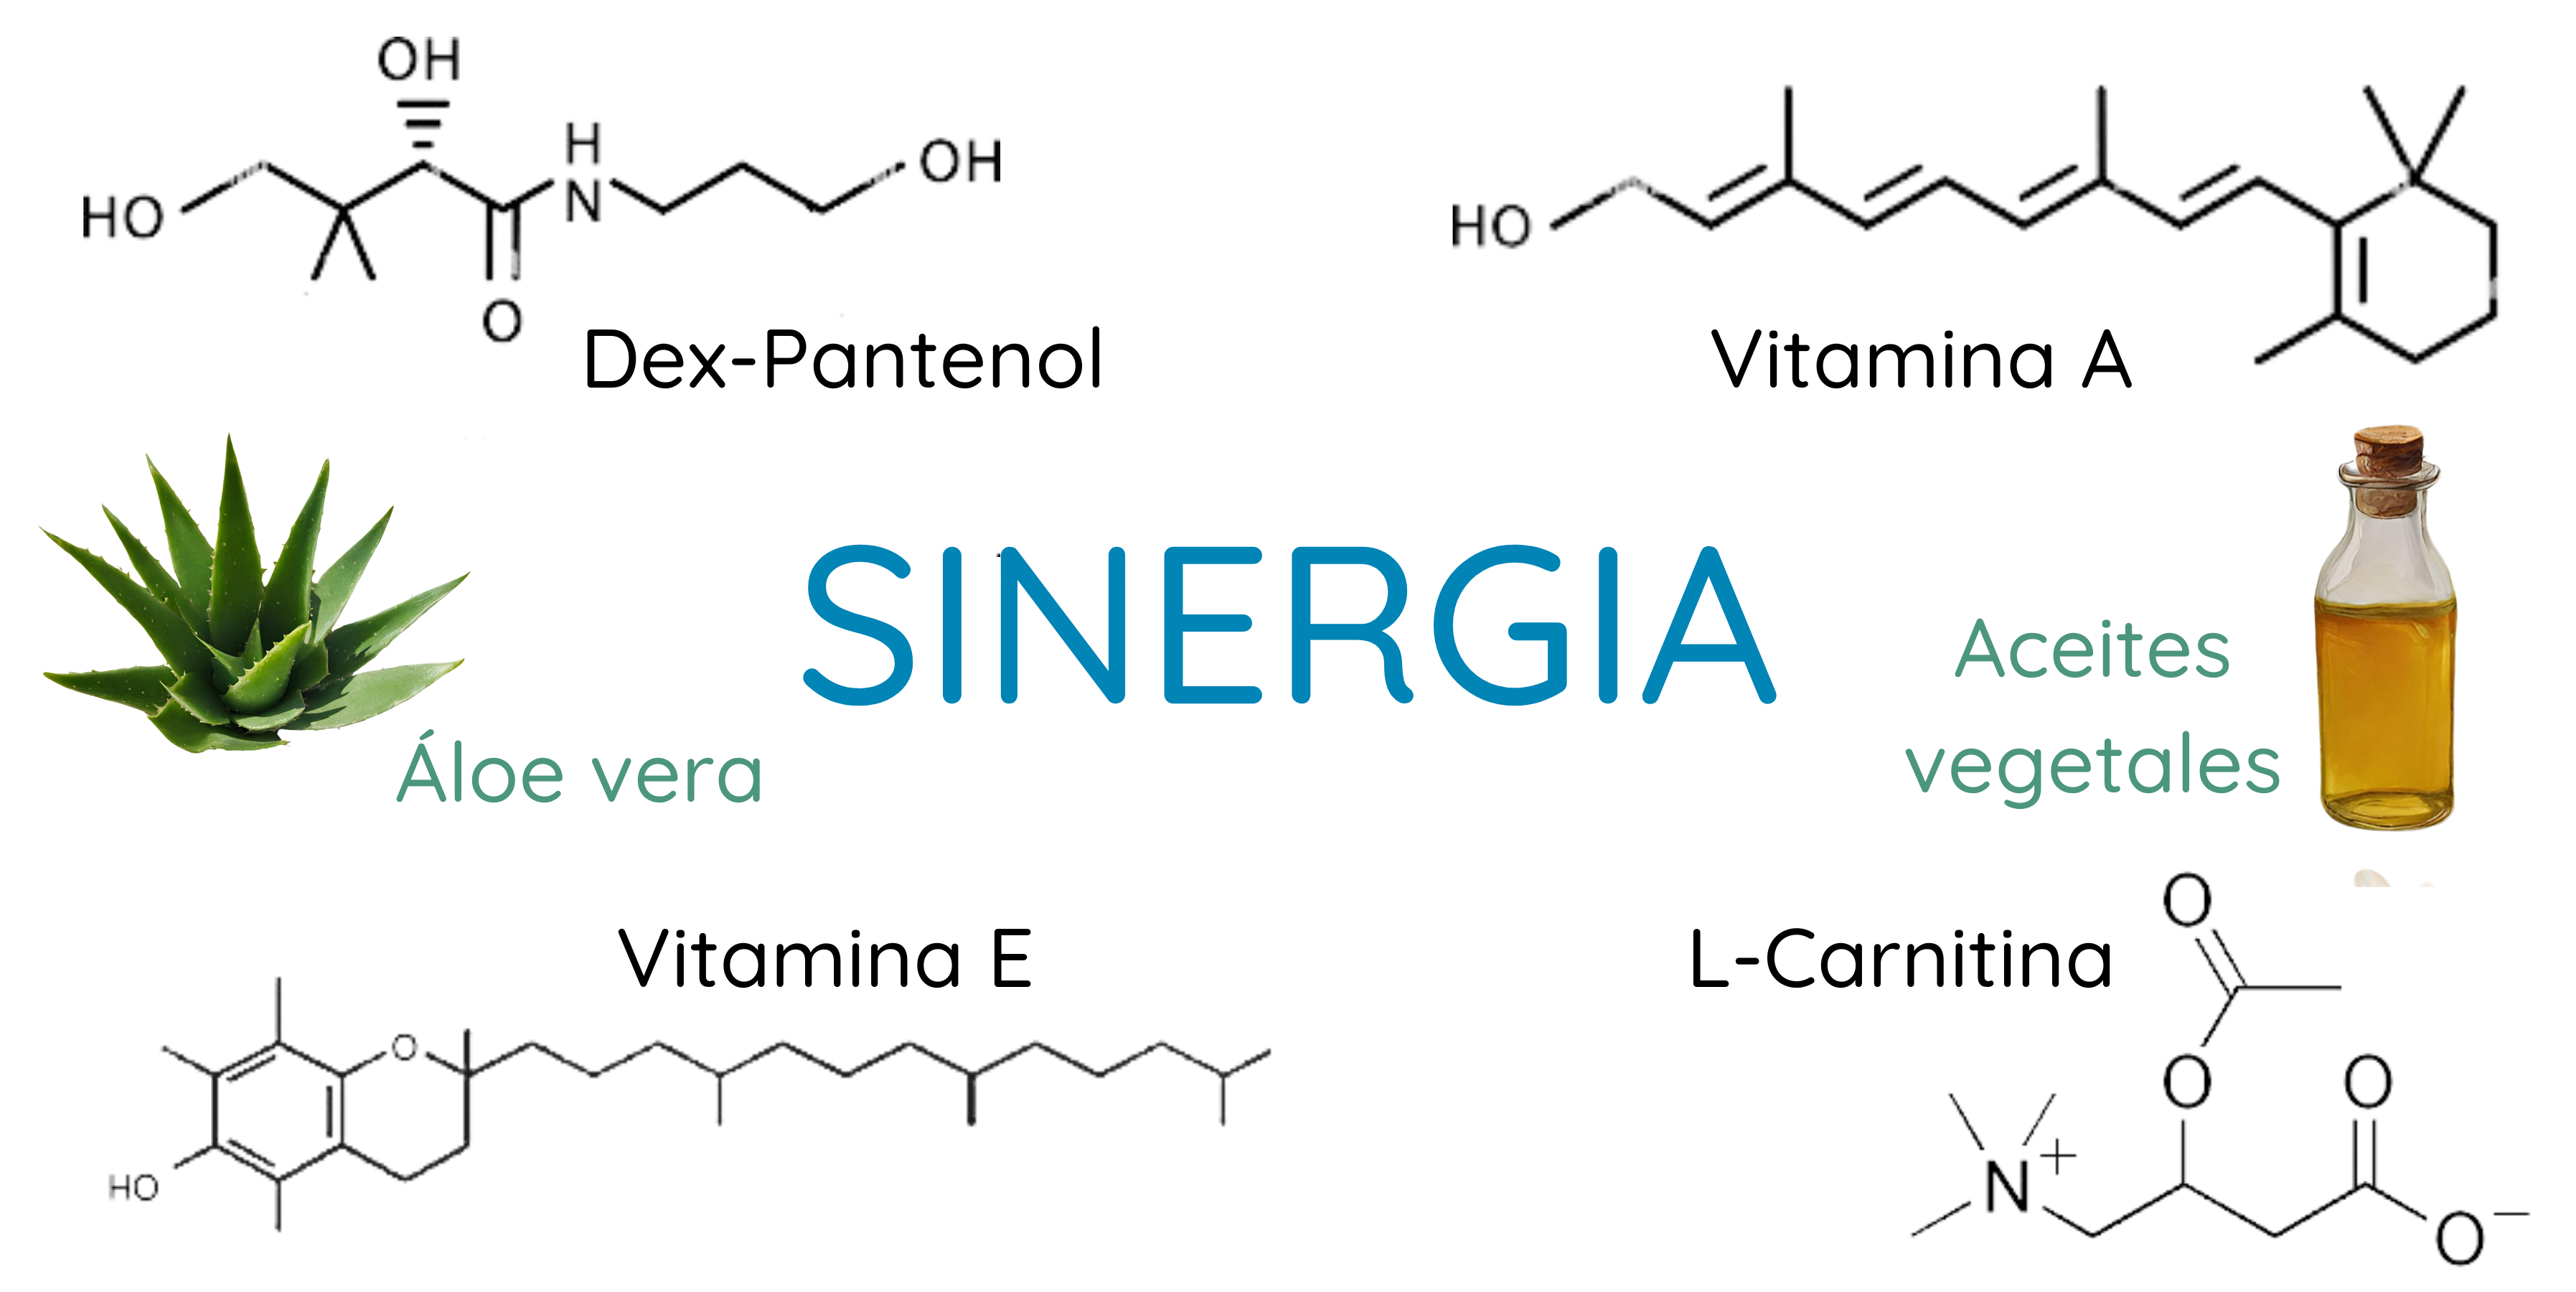 Sinergia de vitamina A y E, aceites vegetales, áloe vera, dex-pantenol y L-carnitina.